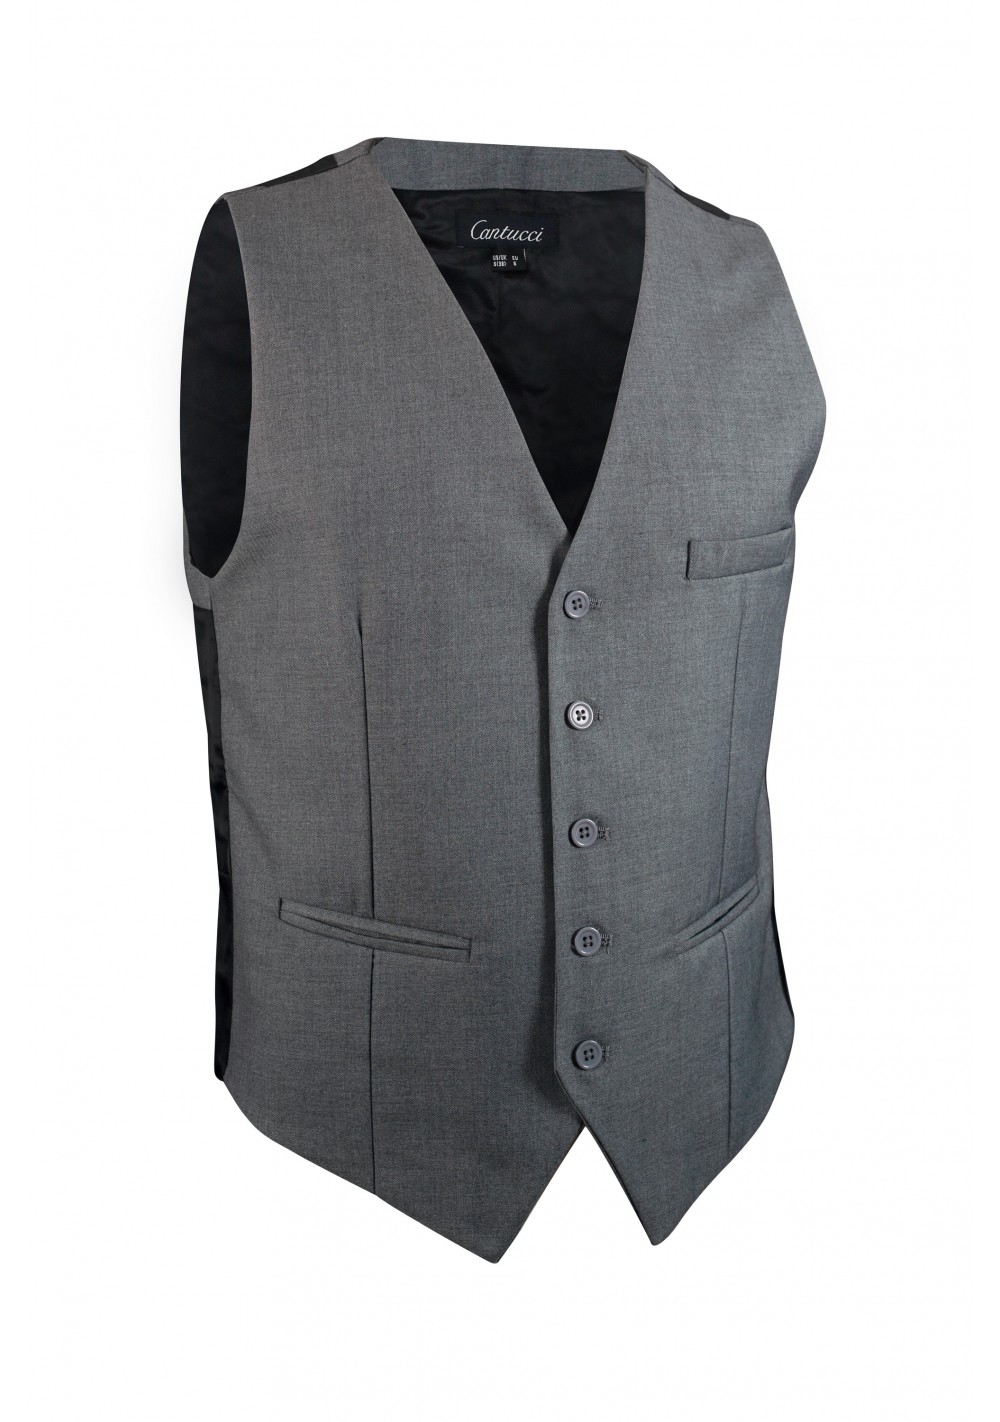 gray dress vest for men